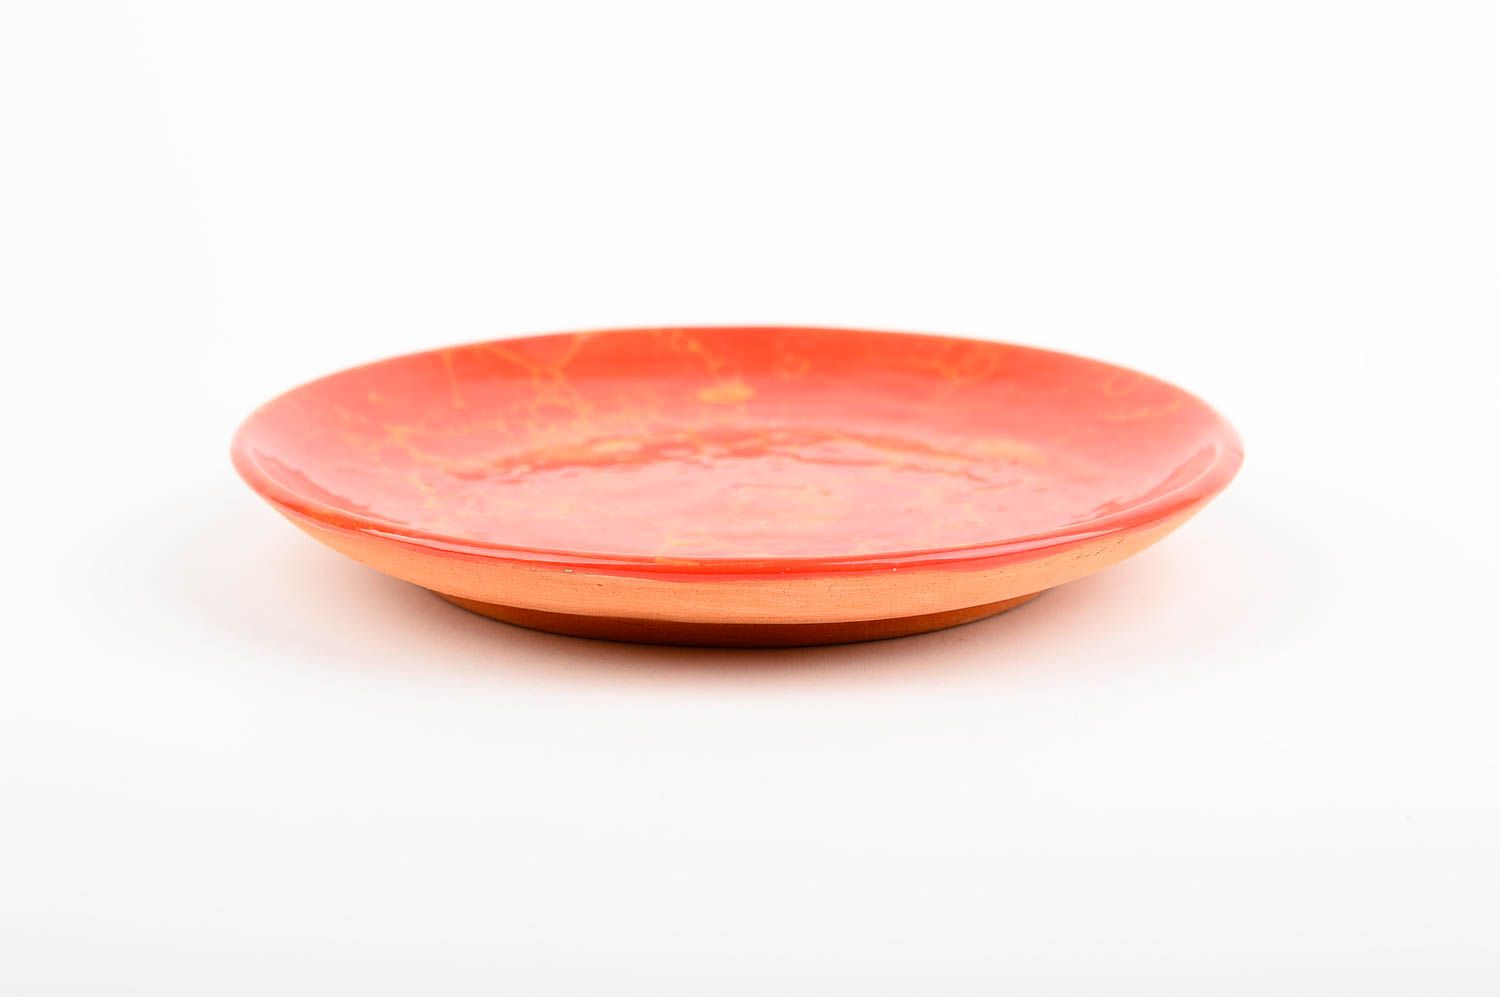 Handmade Keramik Teller Haus Dekoration Geschenk Idee schöner Teller klein rot foto 3